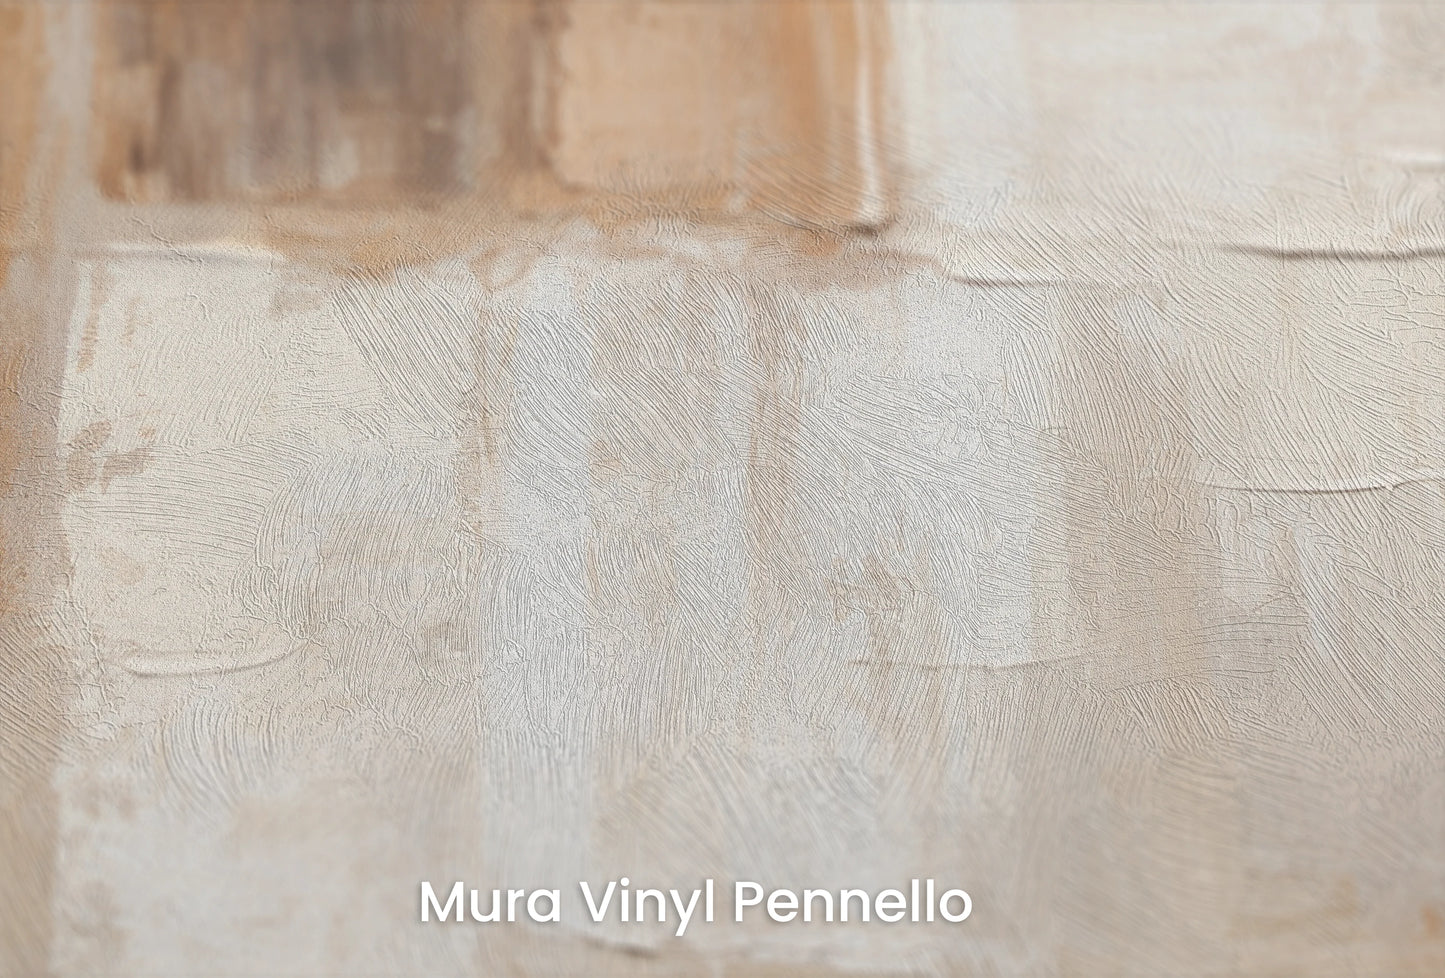 Zbliżenie na artystyczną fototapetę o nazwie Contemporary Blocks na podłożu Mura Vinyl Pennello - faktura pociągnięć pędzla malarskiego.